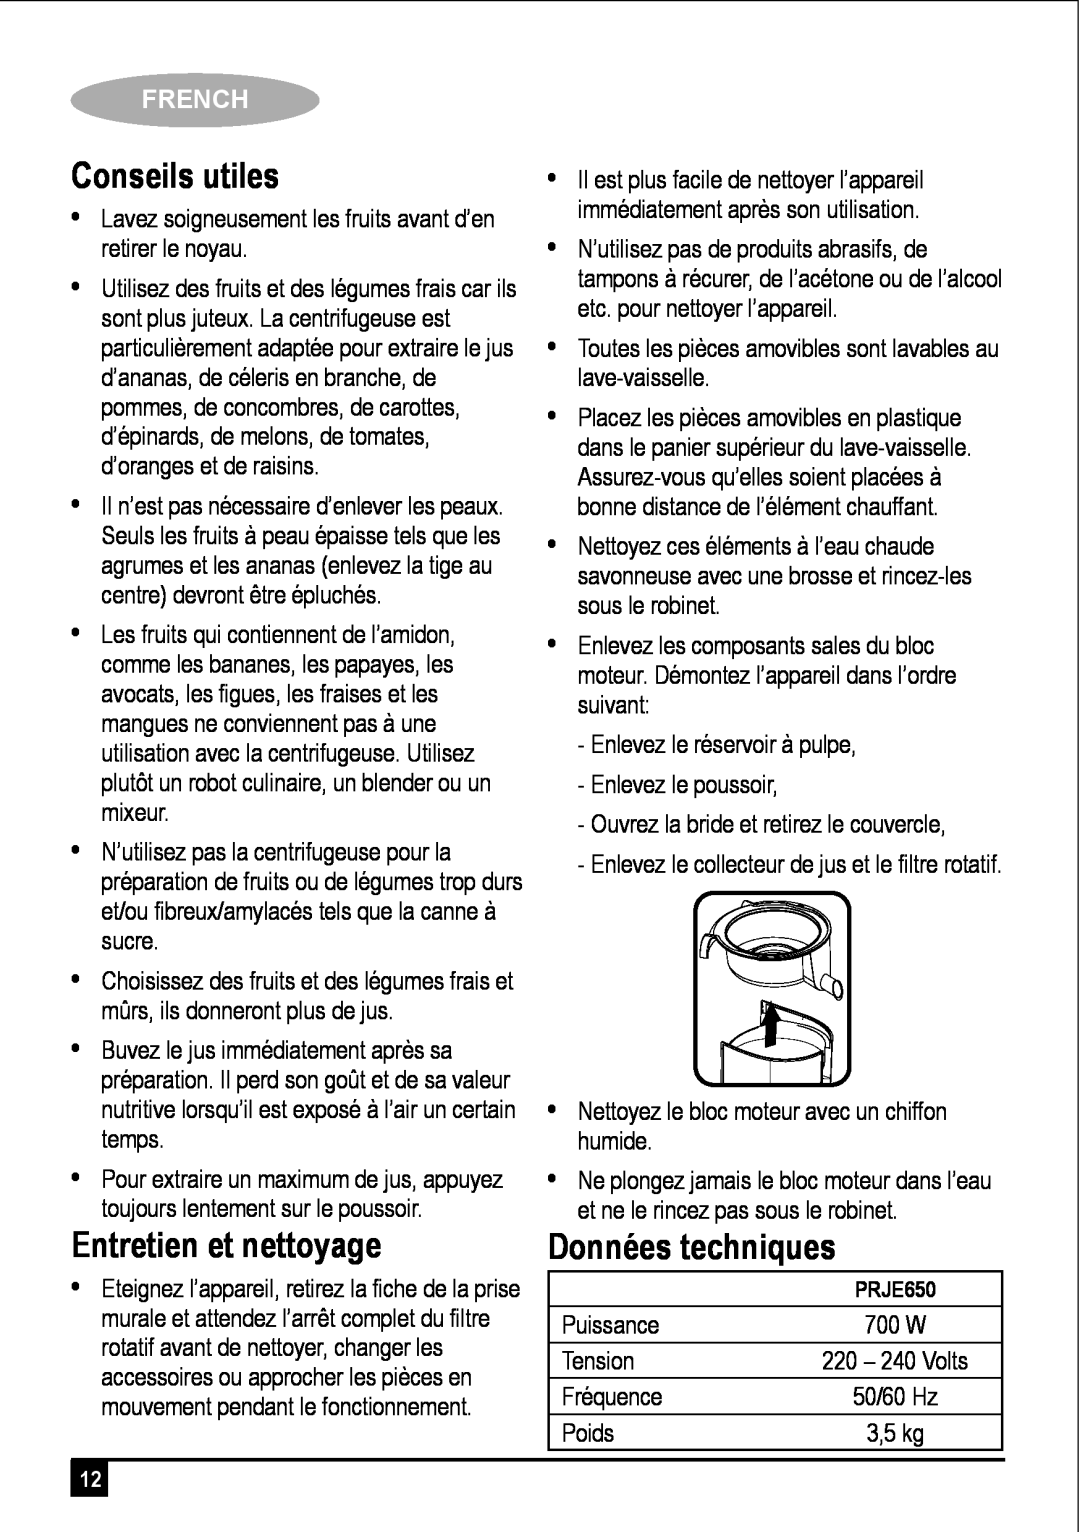 Black & Decker PRJE650 manual Conseils utiles, Entretien et nettoyage, French 